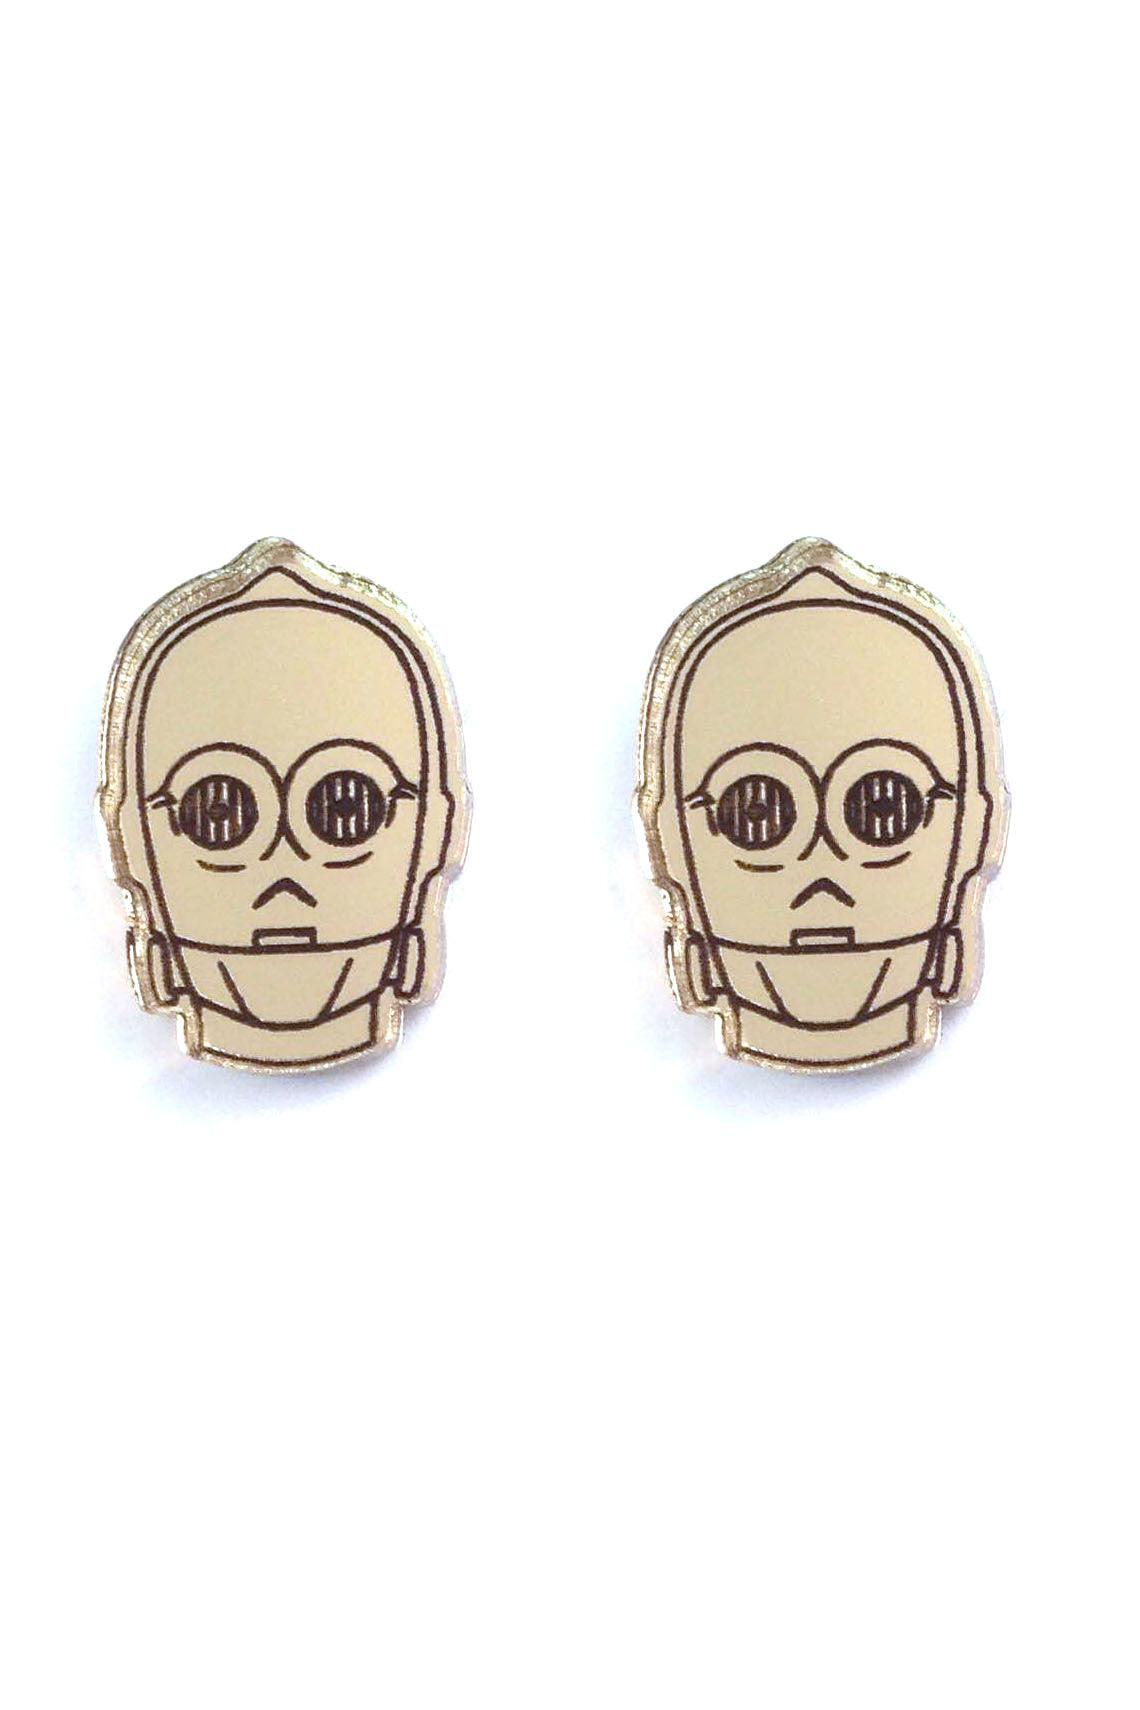 Lili0410 Star Wars C3PO Earrings